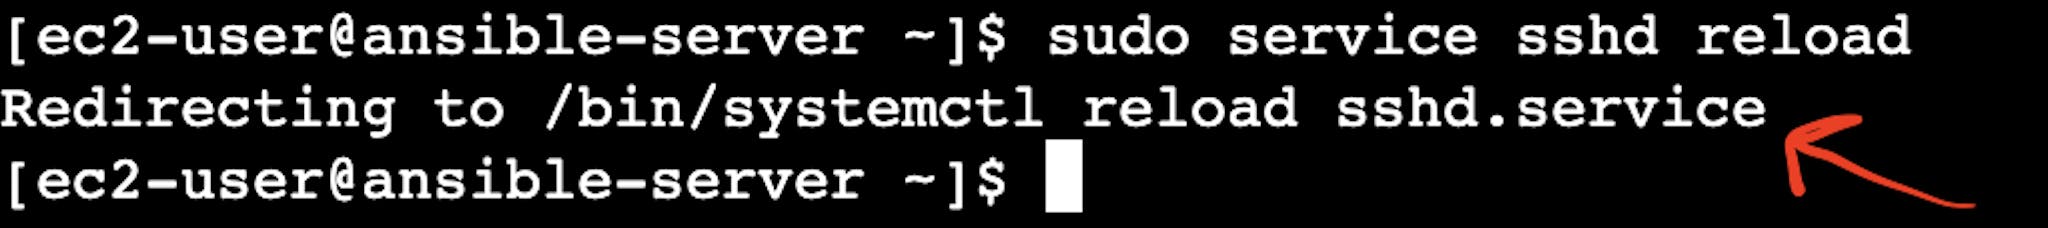 Снимок экрана терминала экземпляра виртуального сервера AWS EC2 с указателем на результат перезагрузки sshd.